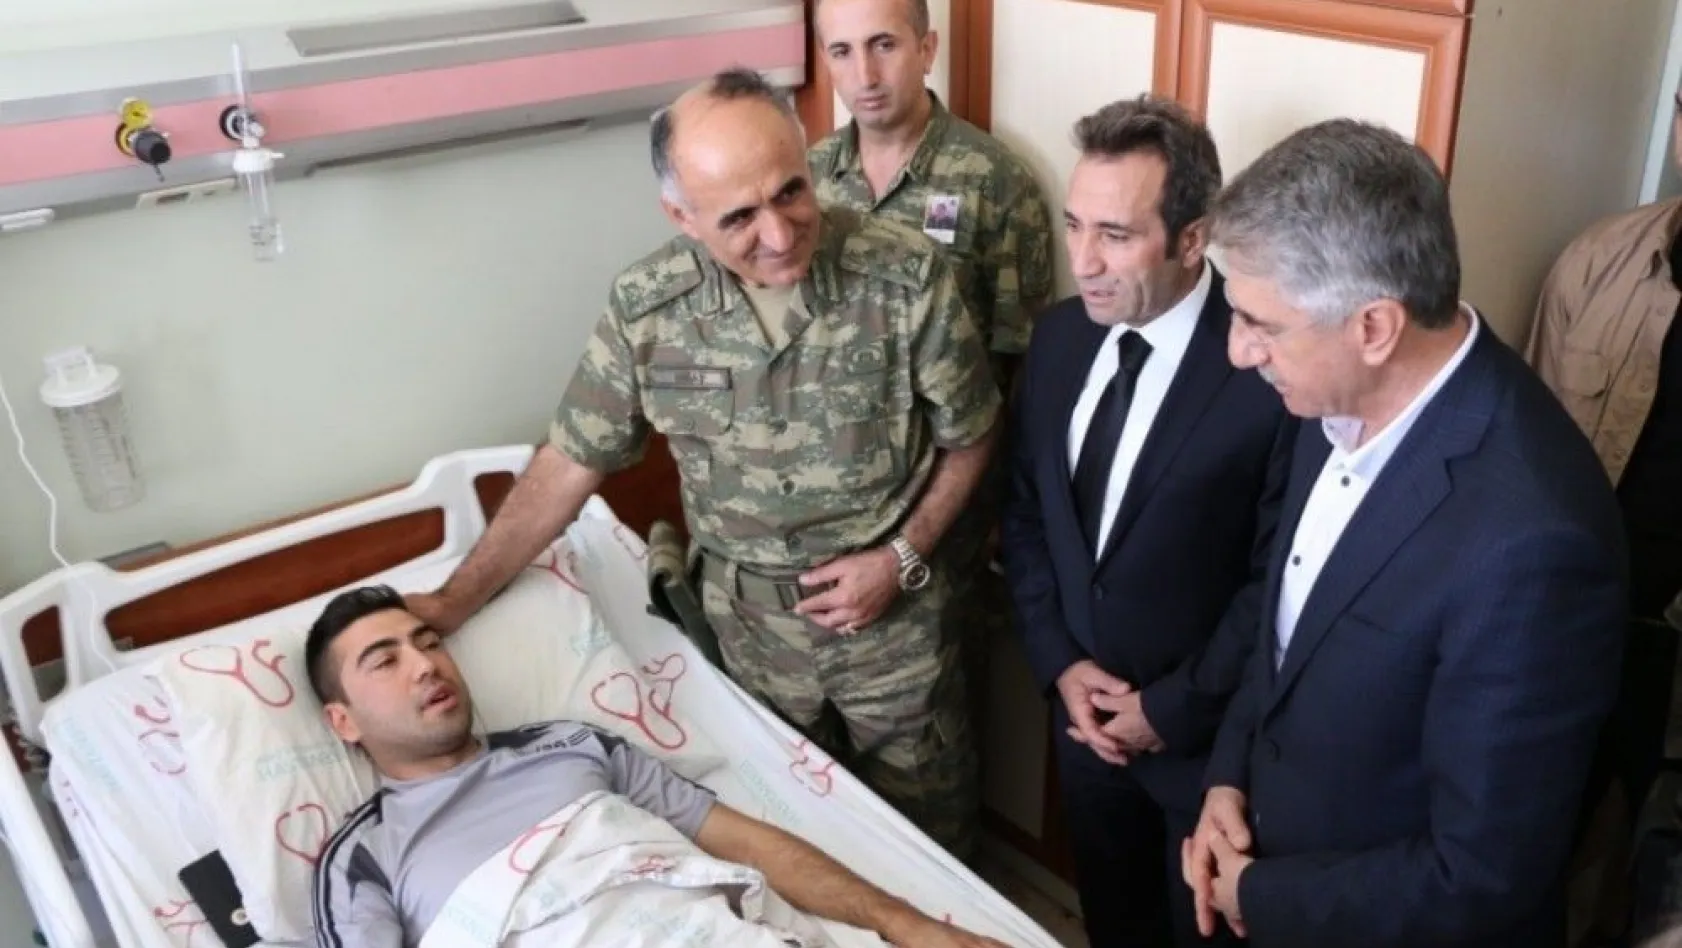 Vali Mantı, yaralı askeri ziyaret etti